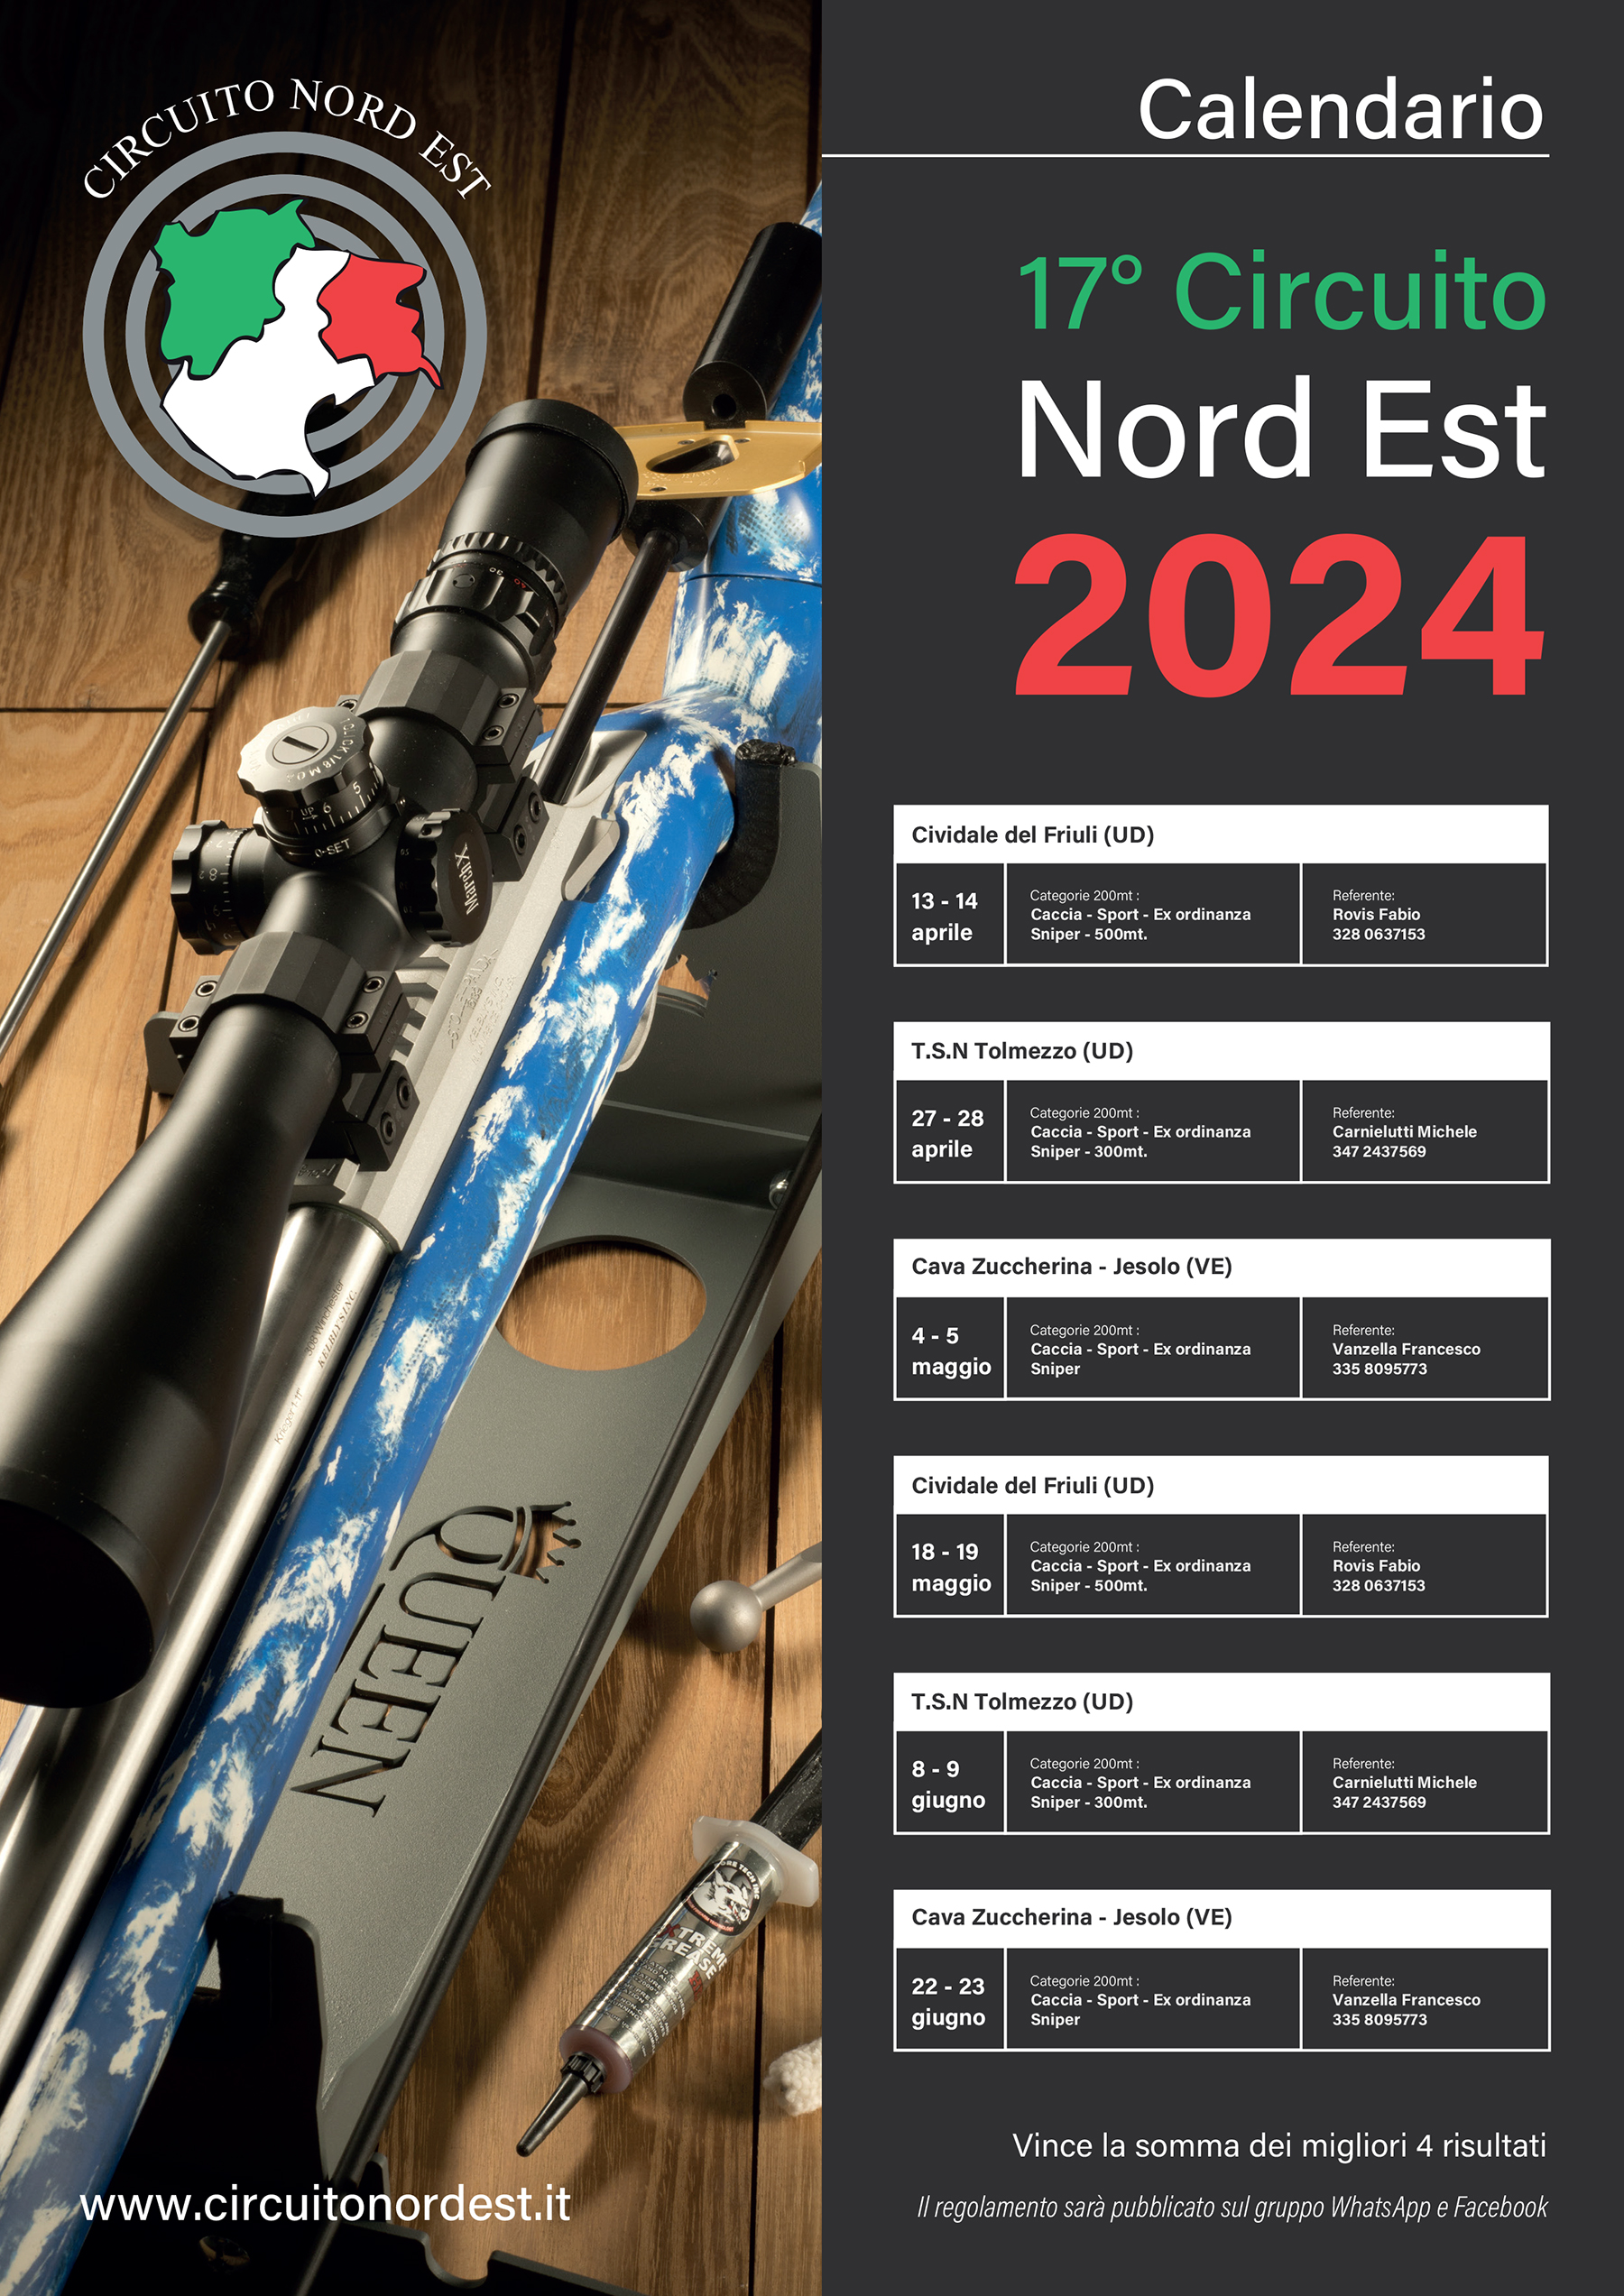 Calendar Circuito Nord Est 2024